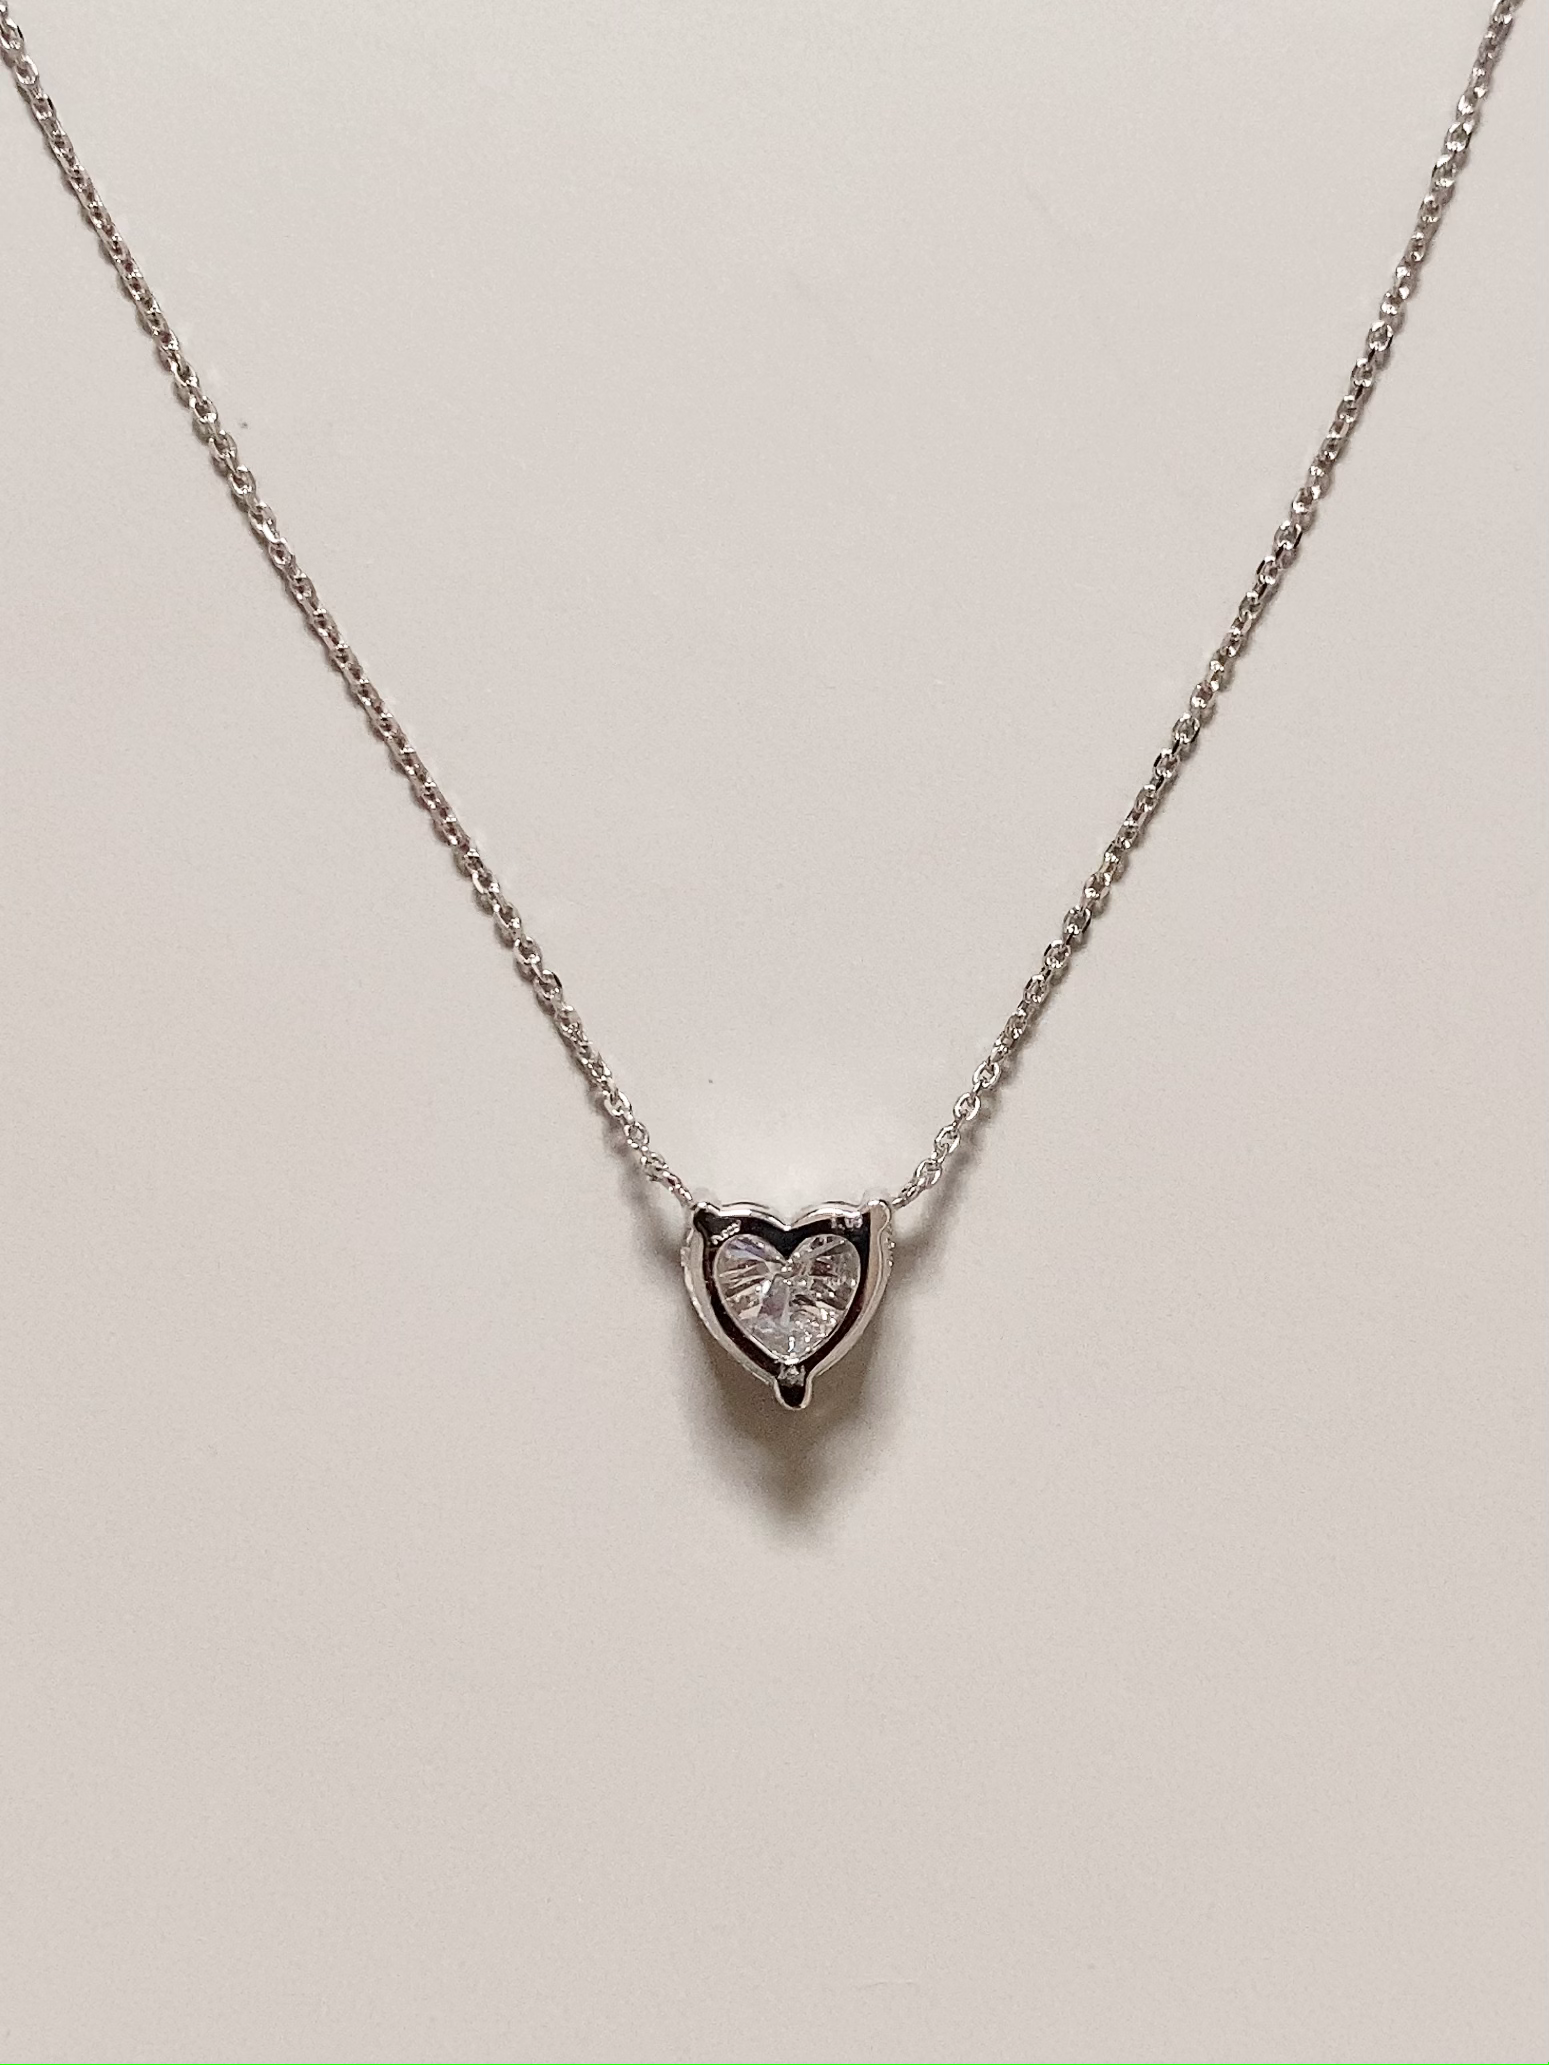 1カラット | Heart Solitaire Necklace | ラボグロウンダイヤモンド ネックレス